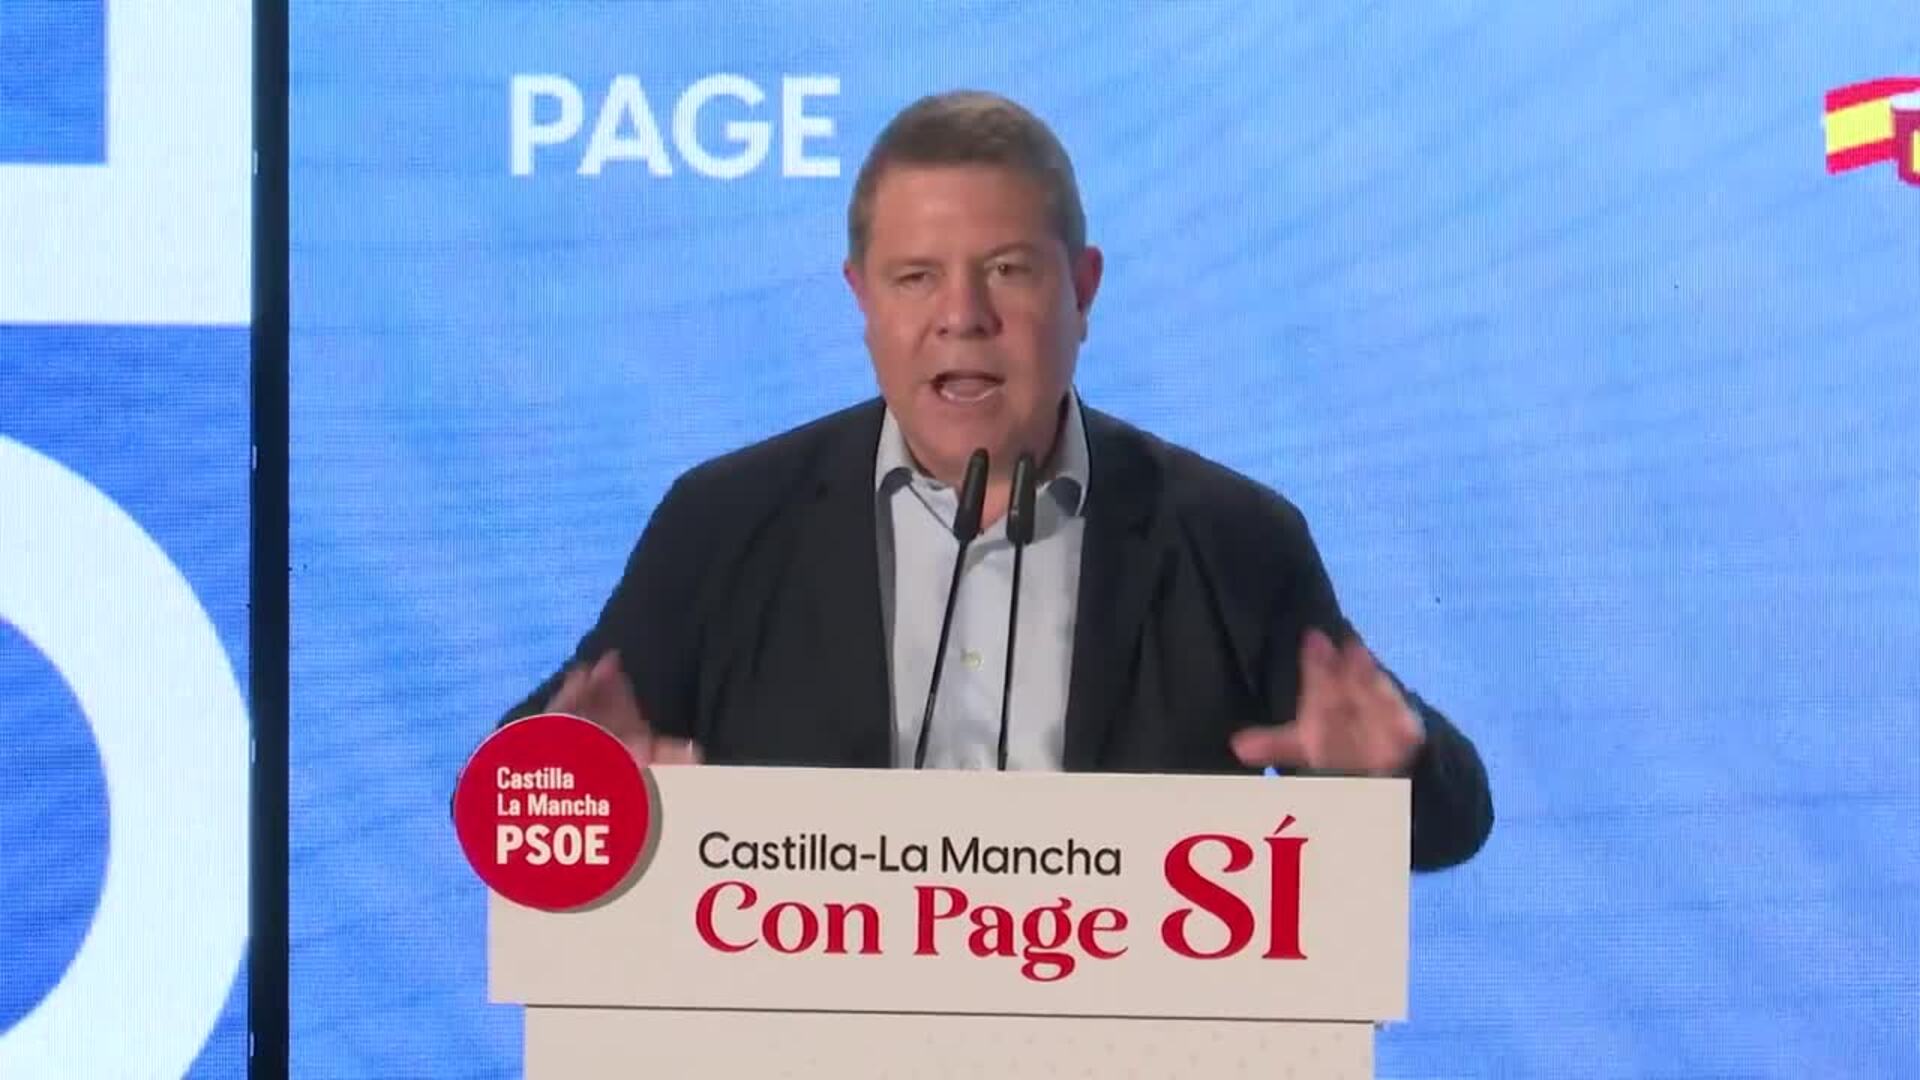 Page convoca a votar PSOE si quieren a alguien que se comprometa "a carta cabal con esta tierra"